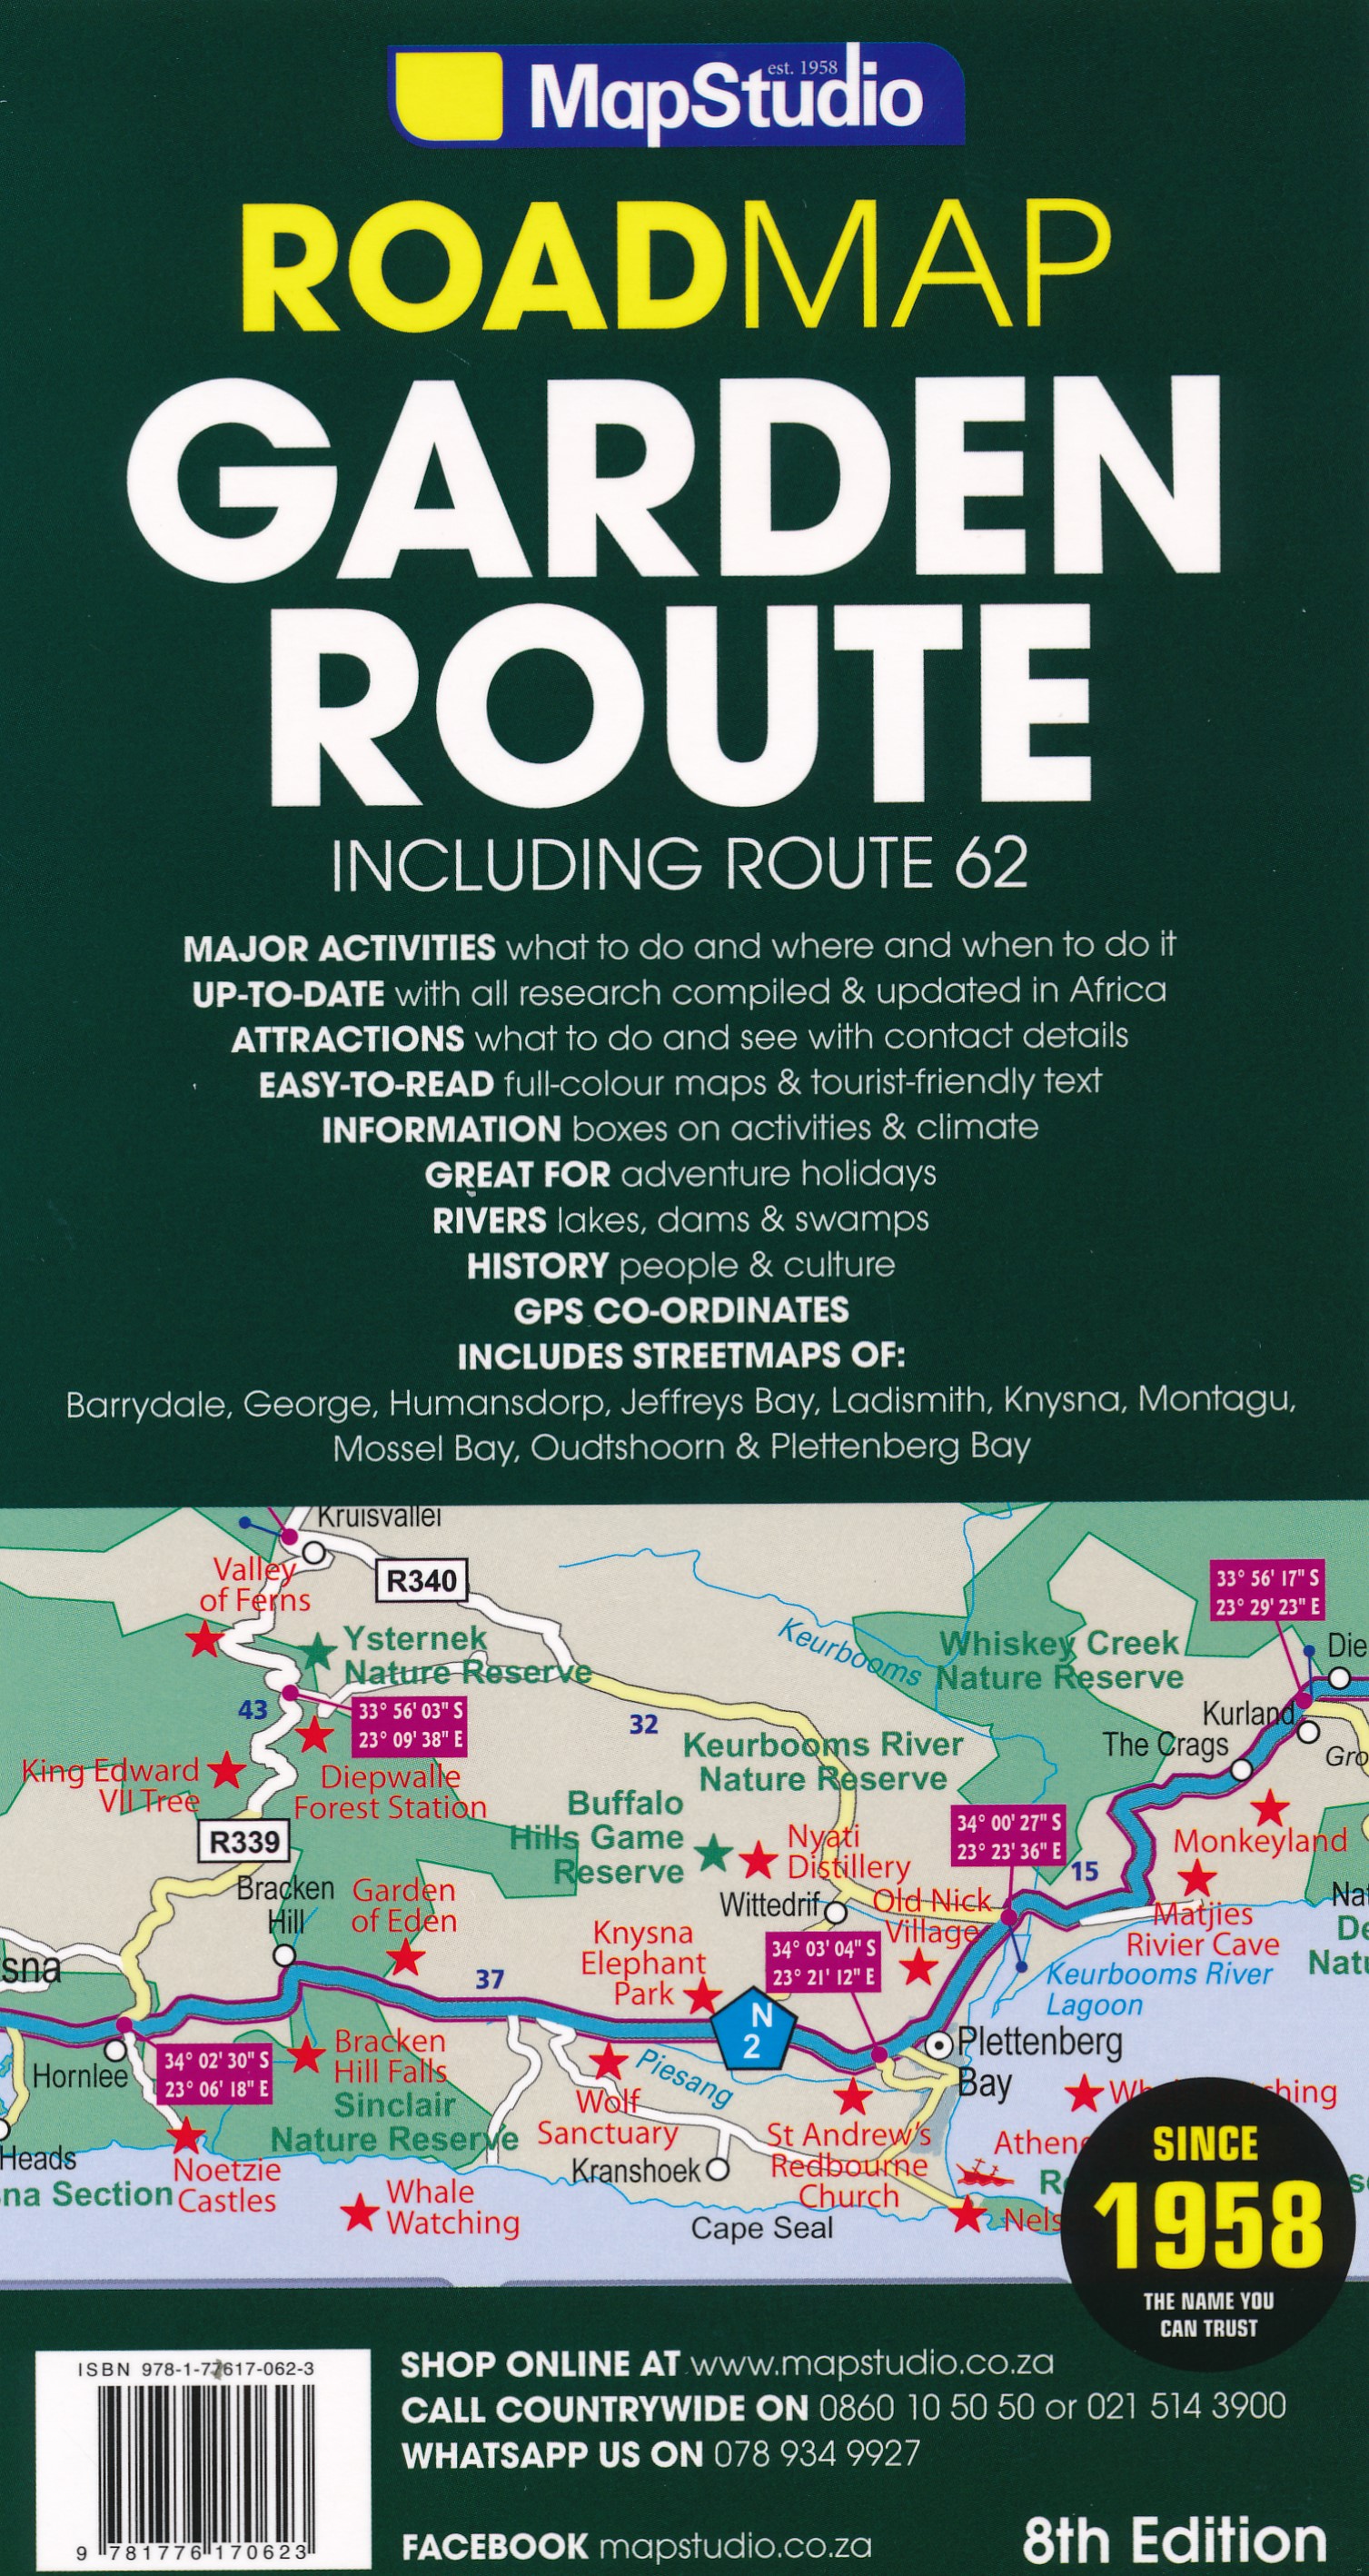 Online bestellen: Wegenkaart - landkaart 02 Garden route & Route 62 Road Map | MapStudio